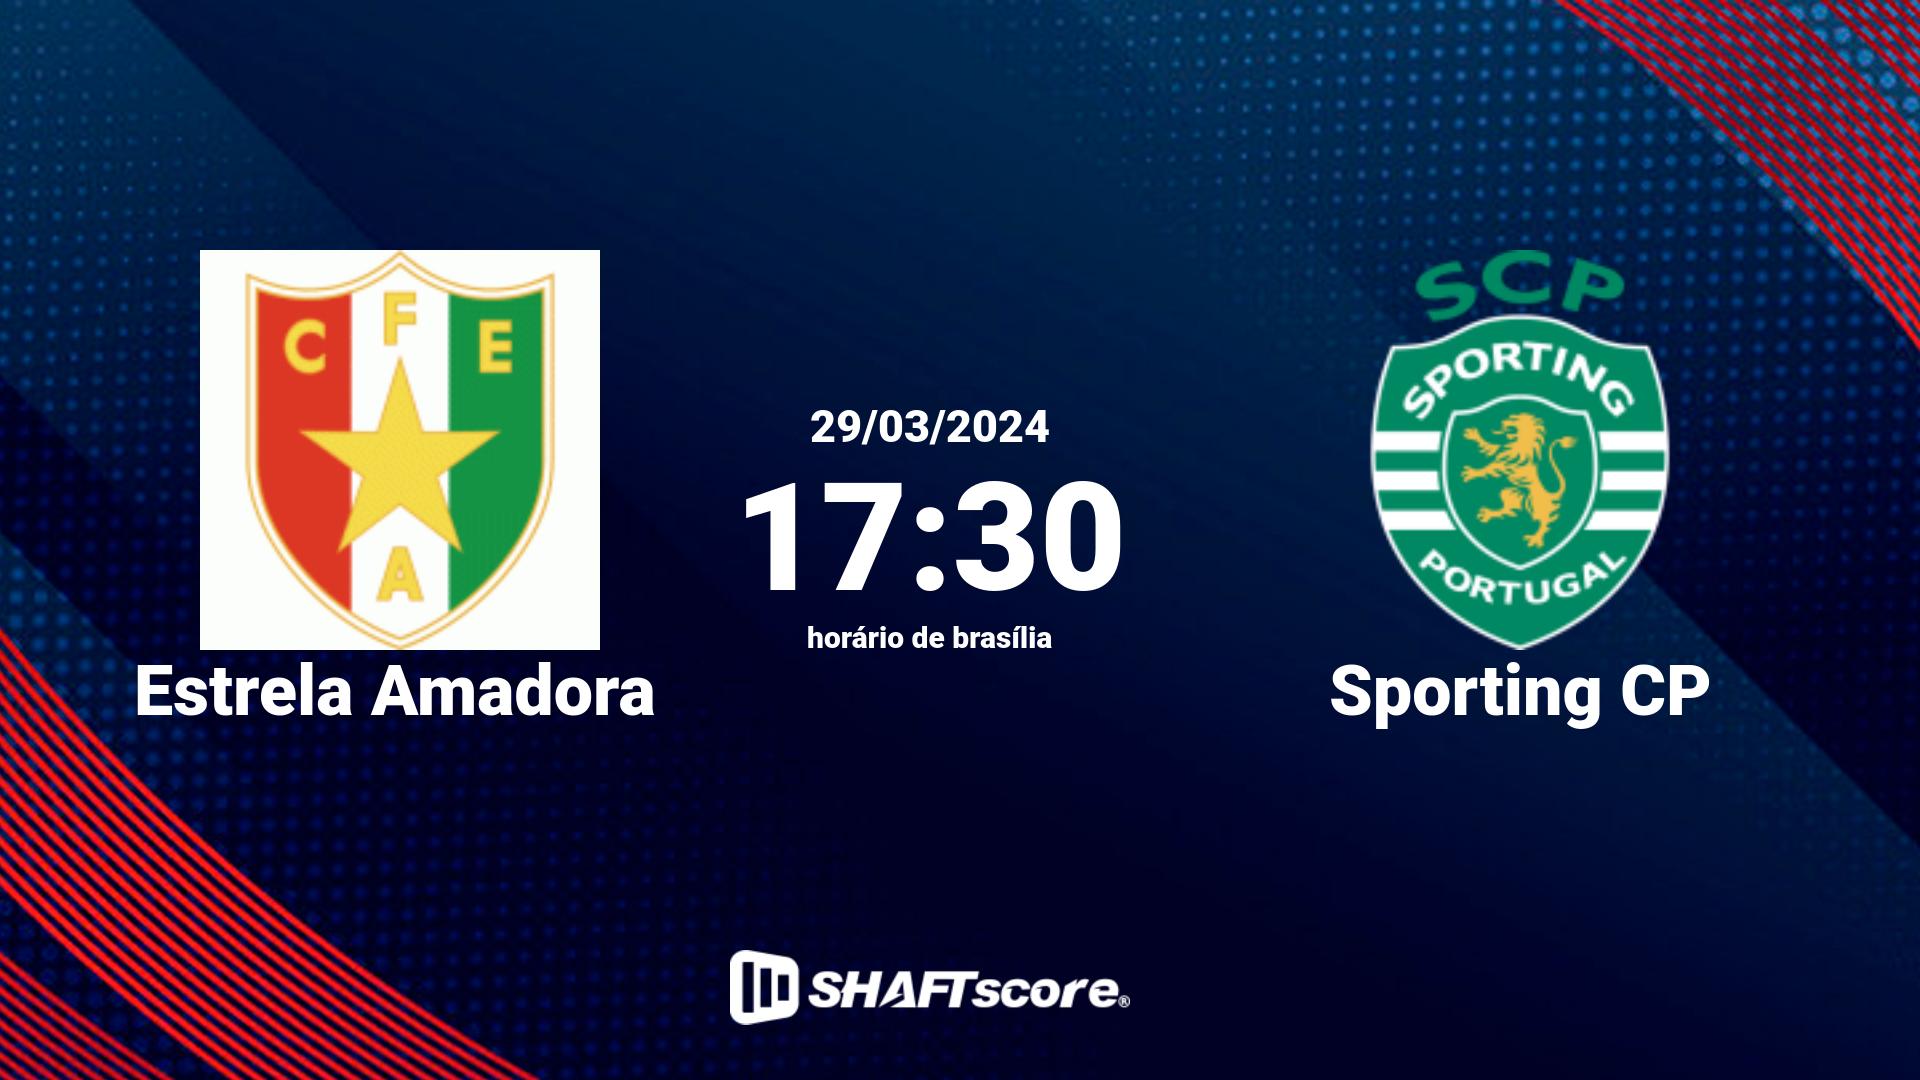 Estatísticas do jogo Estrela Amadora vs Sporting CP 29.03 17:30